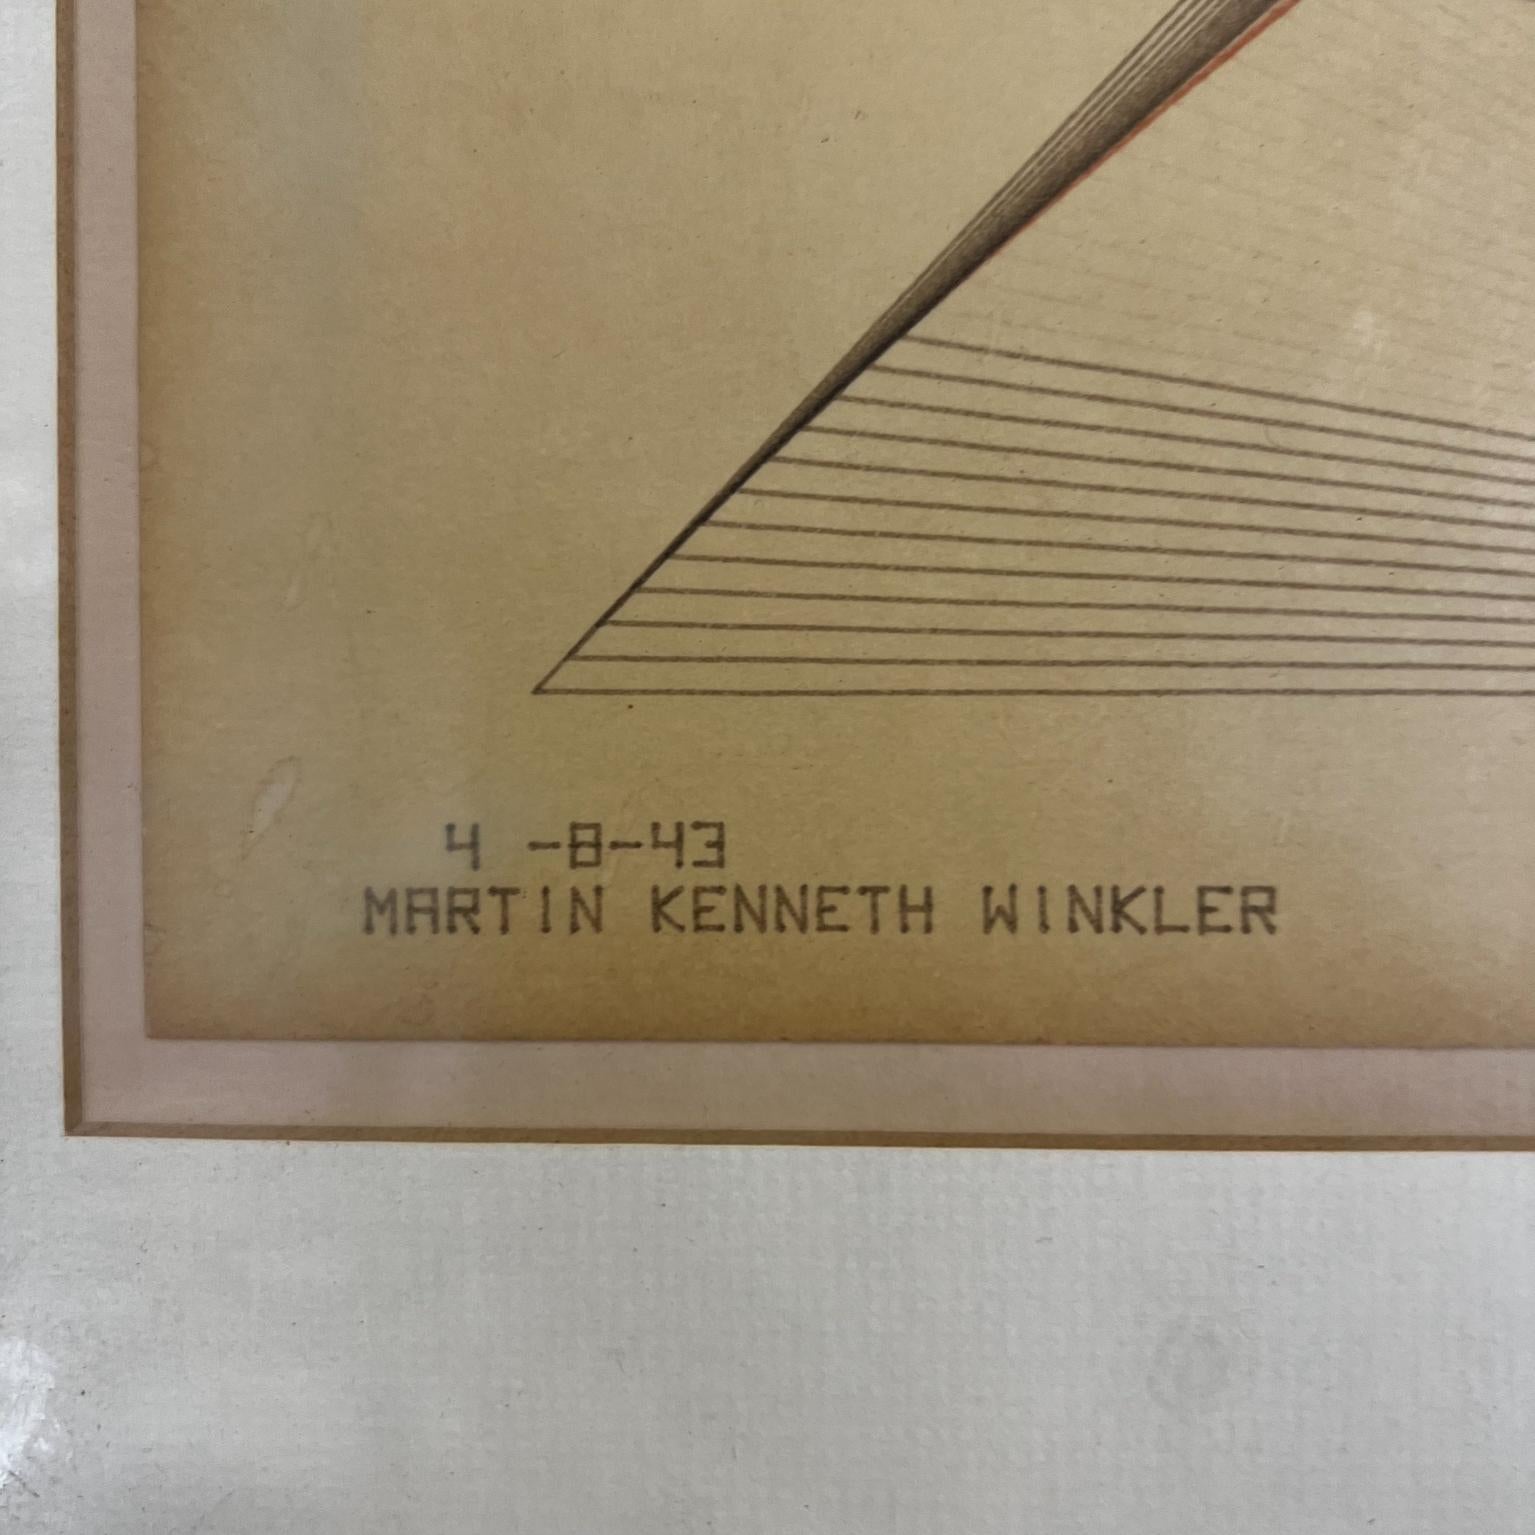 Martin Kenneth Winkler Ink on Paper Parabola Hyperbola 4-8-43 For Sale 2